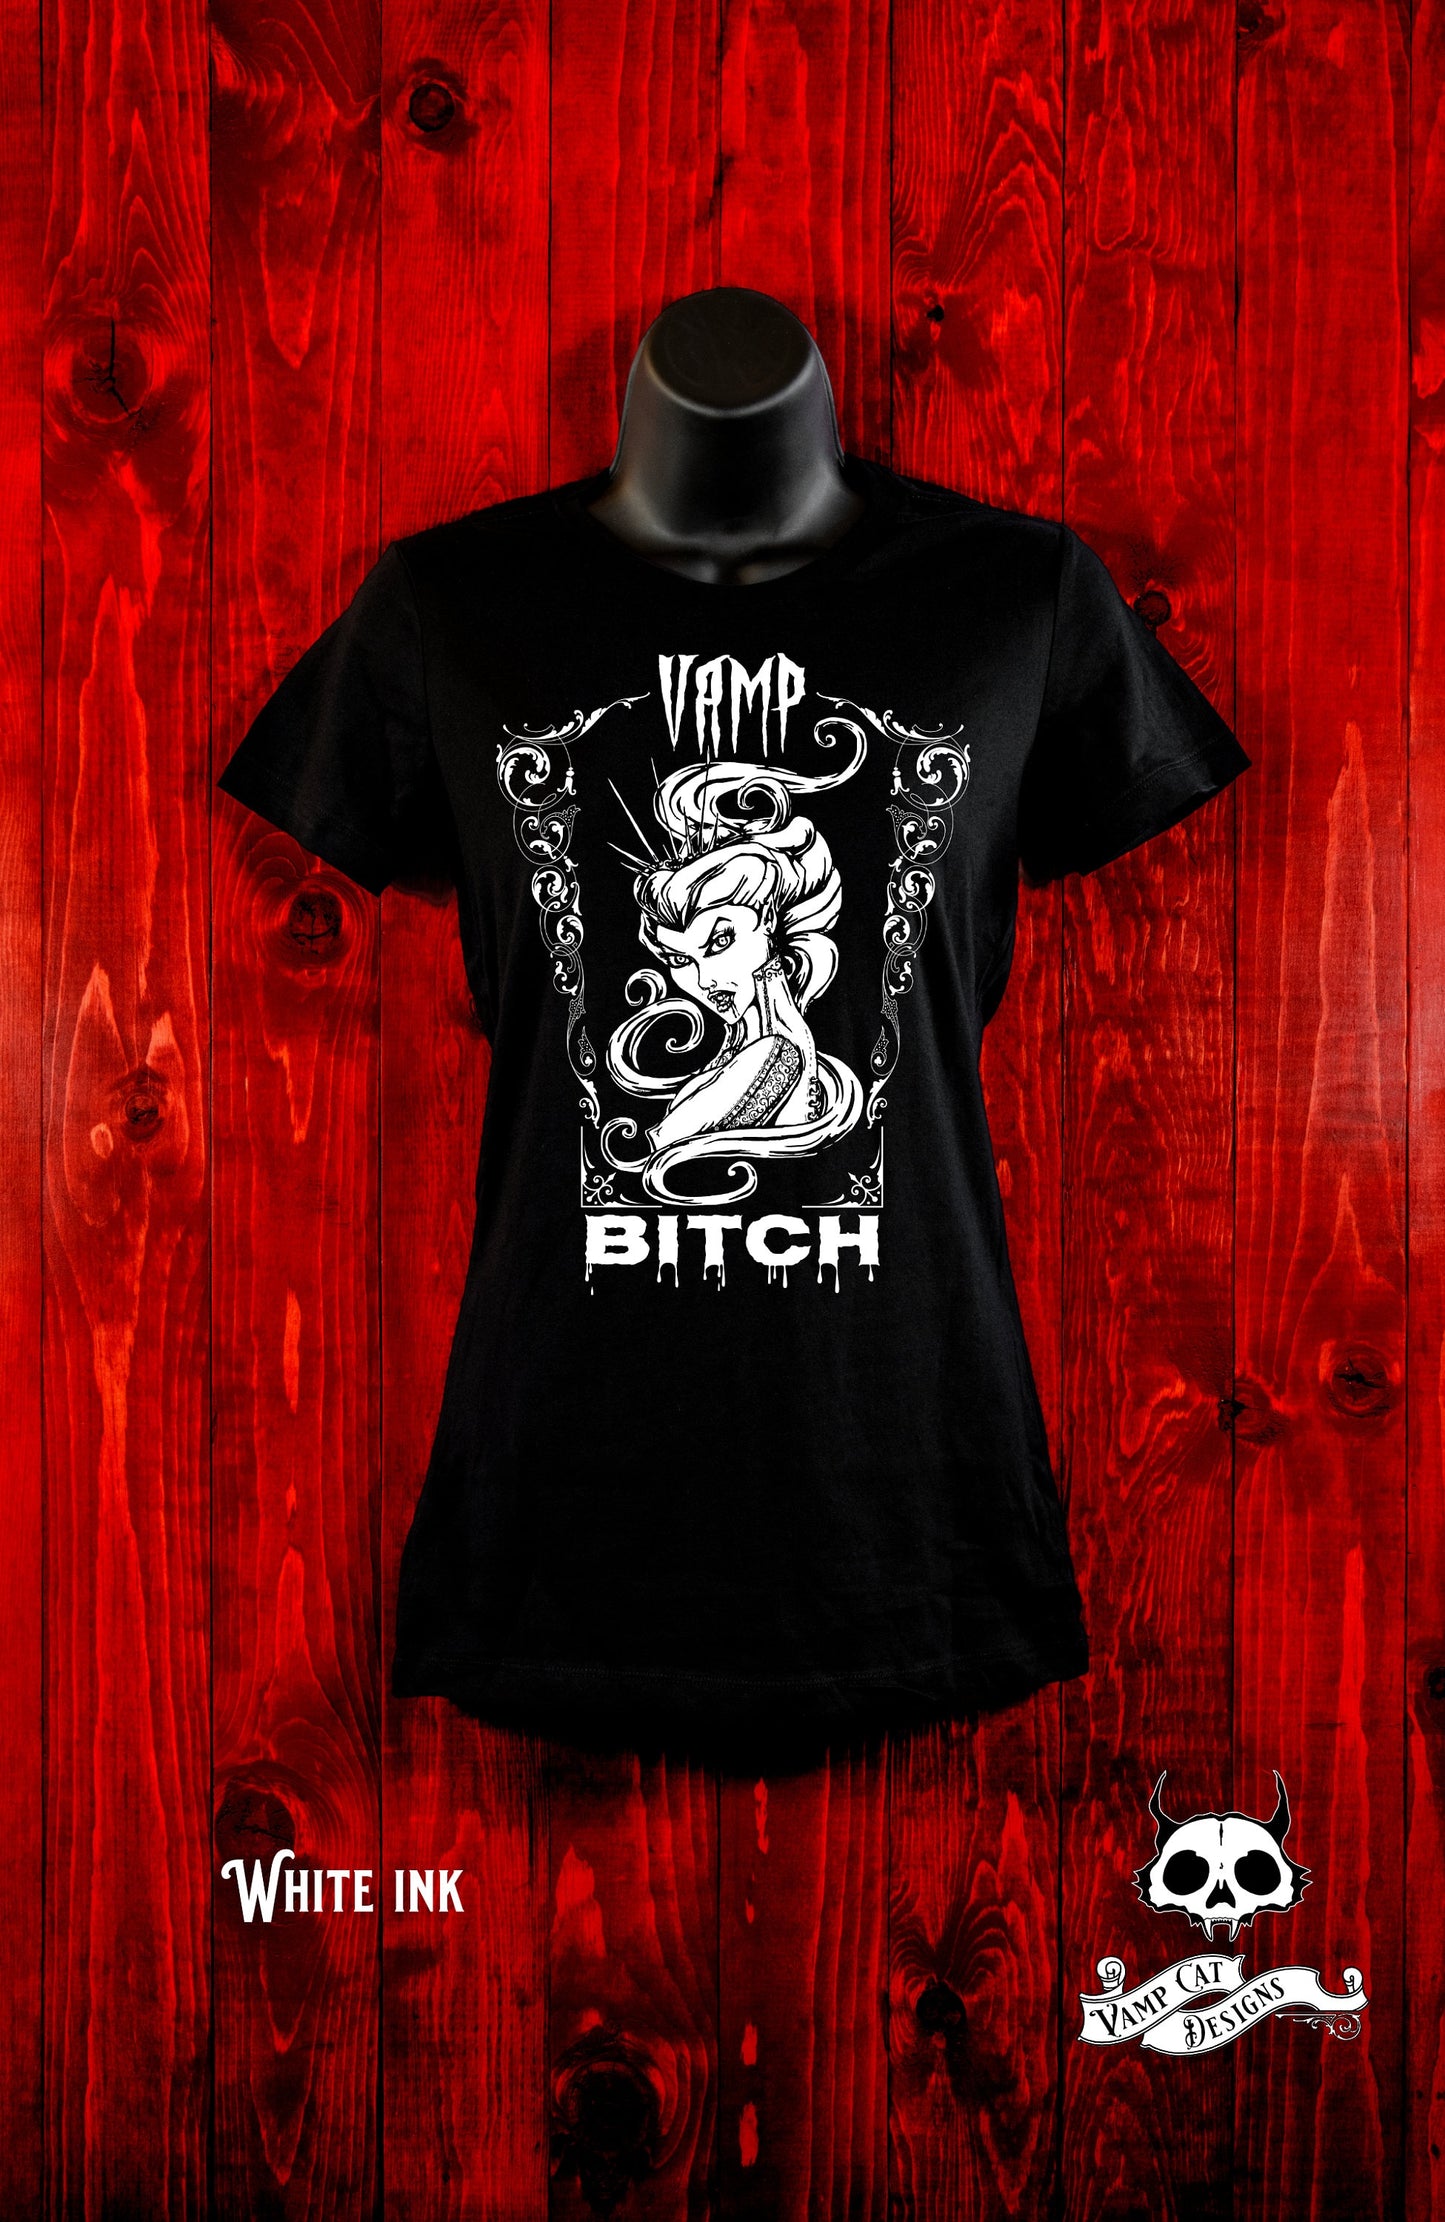 Vamp Bitch-T-Shirt-Women's-Horror Art-Dark Apparel-Vampire Women's Top-Gothic Tee-Vampire Art-Dark Humor T-Shirt-Attitude Tee-Vampire Gifts